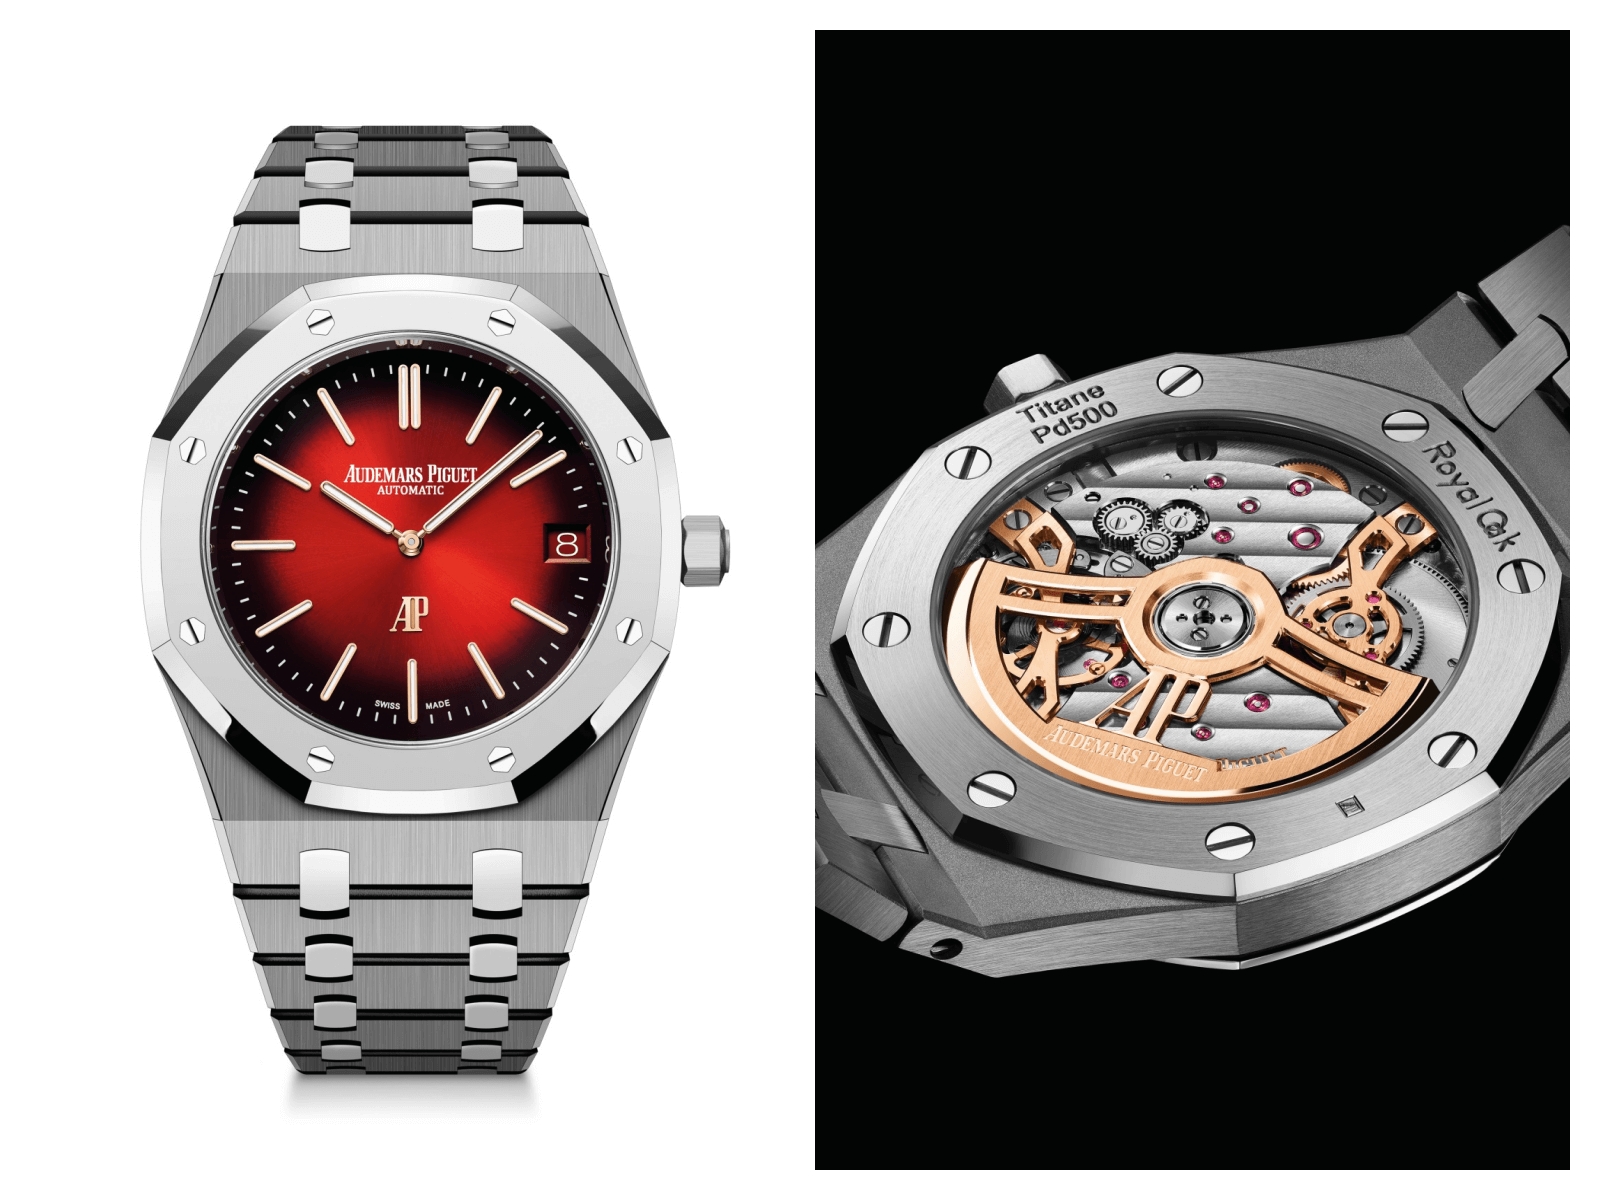 愛彼ROYAL OAK皇家橡樹系列「JUMBO」超薄腕錶結合高科技創新材質打造全新風貌